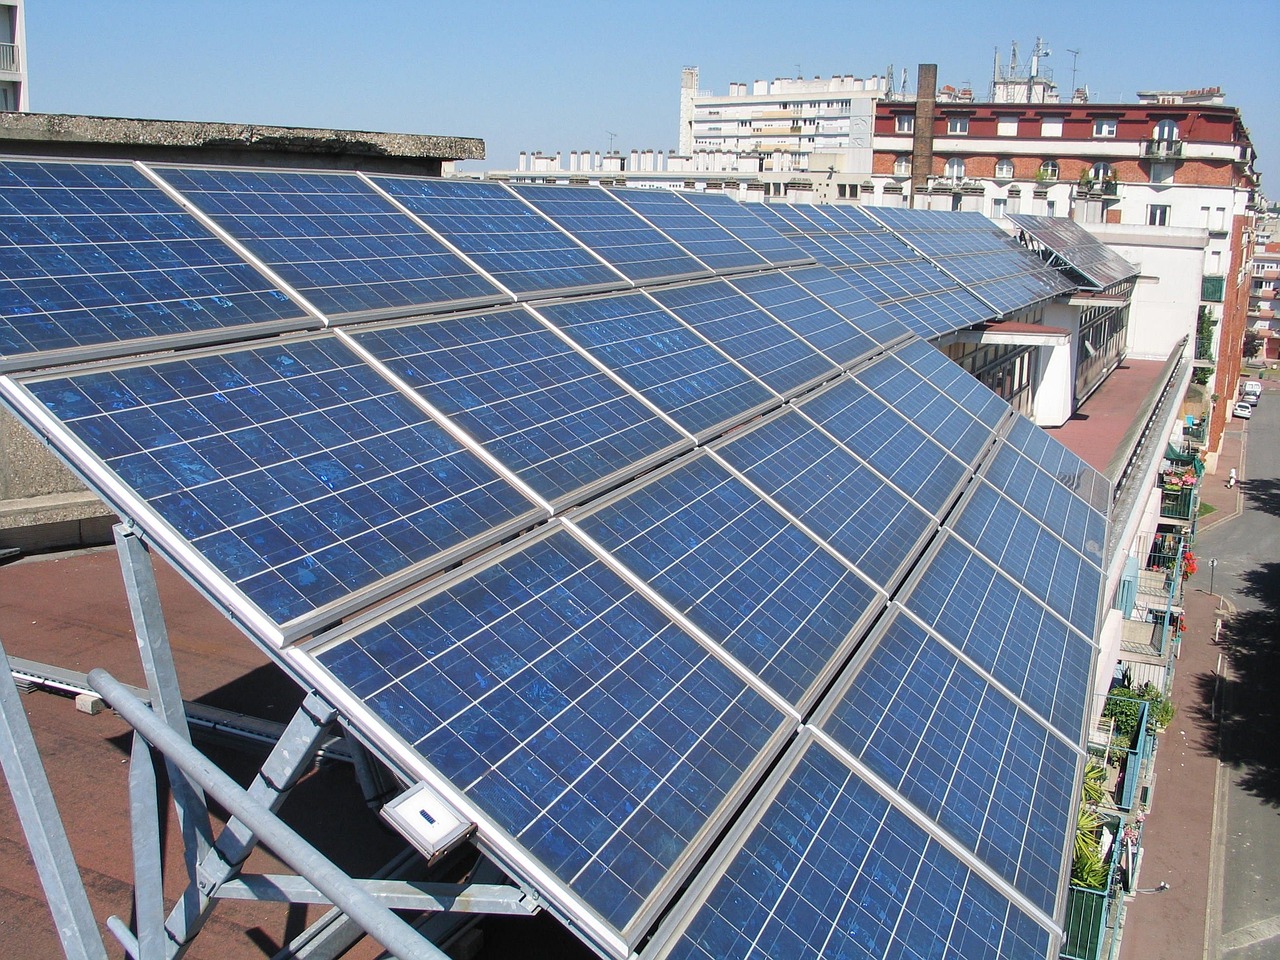 Meyer Burger wählt USA für Solarproduktion: Subventionen und Strompreise entscheiden